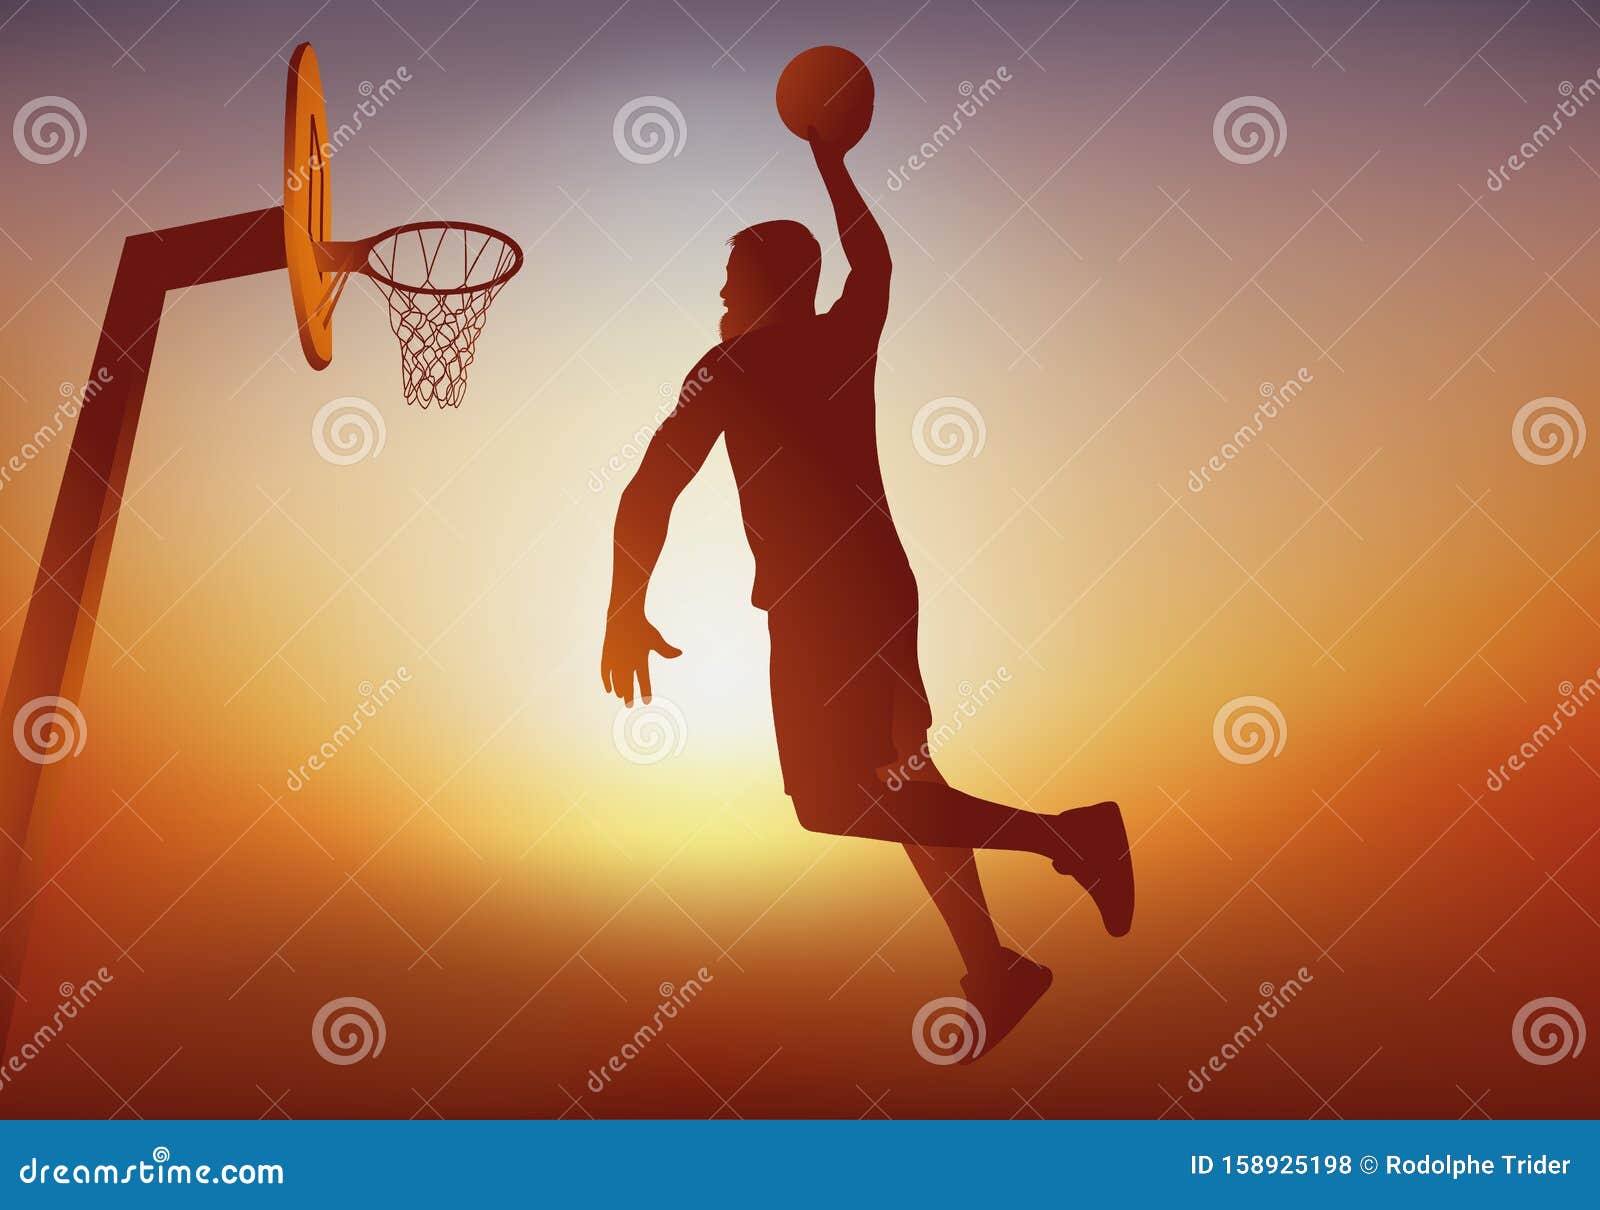 O laranja no basquete - Mulheres à Cesta